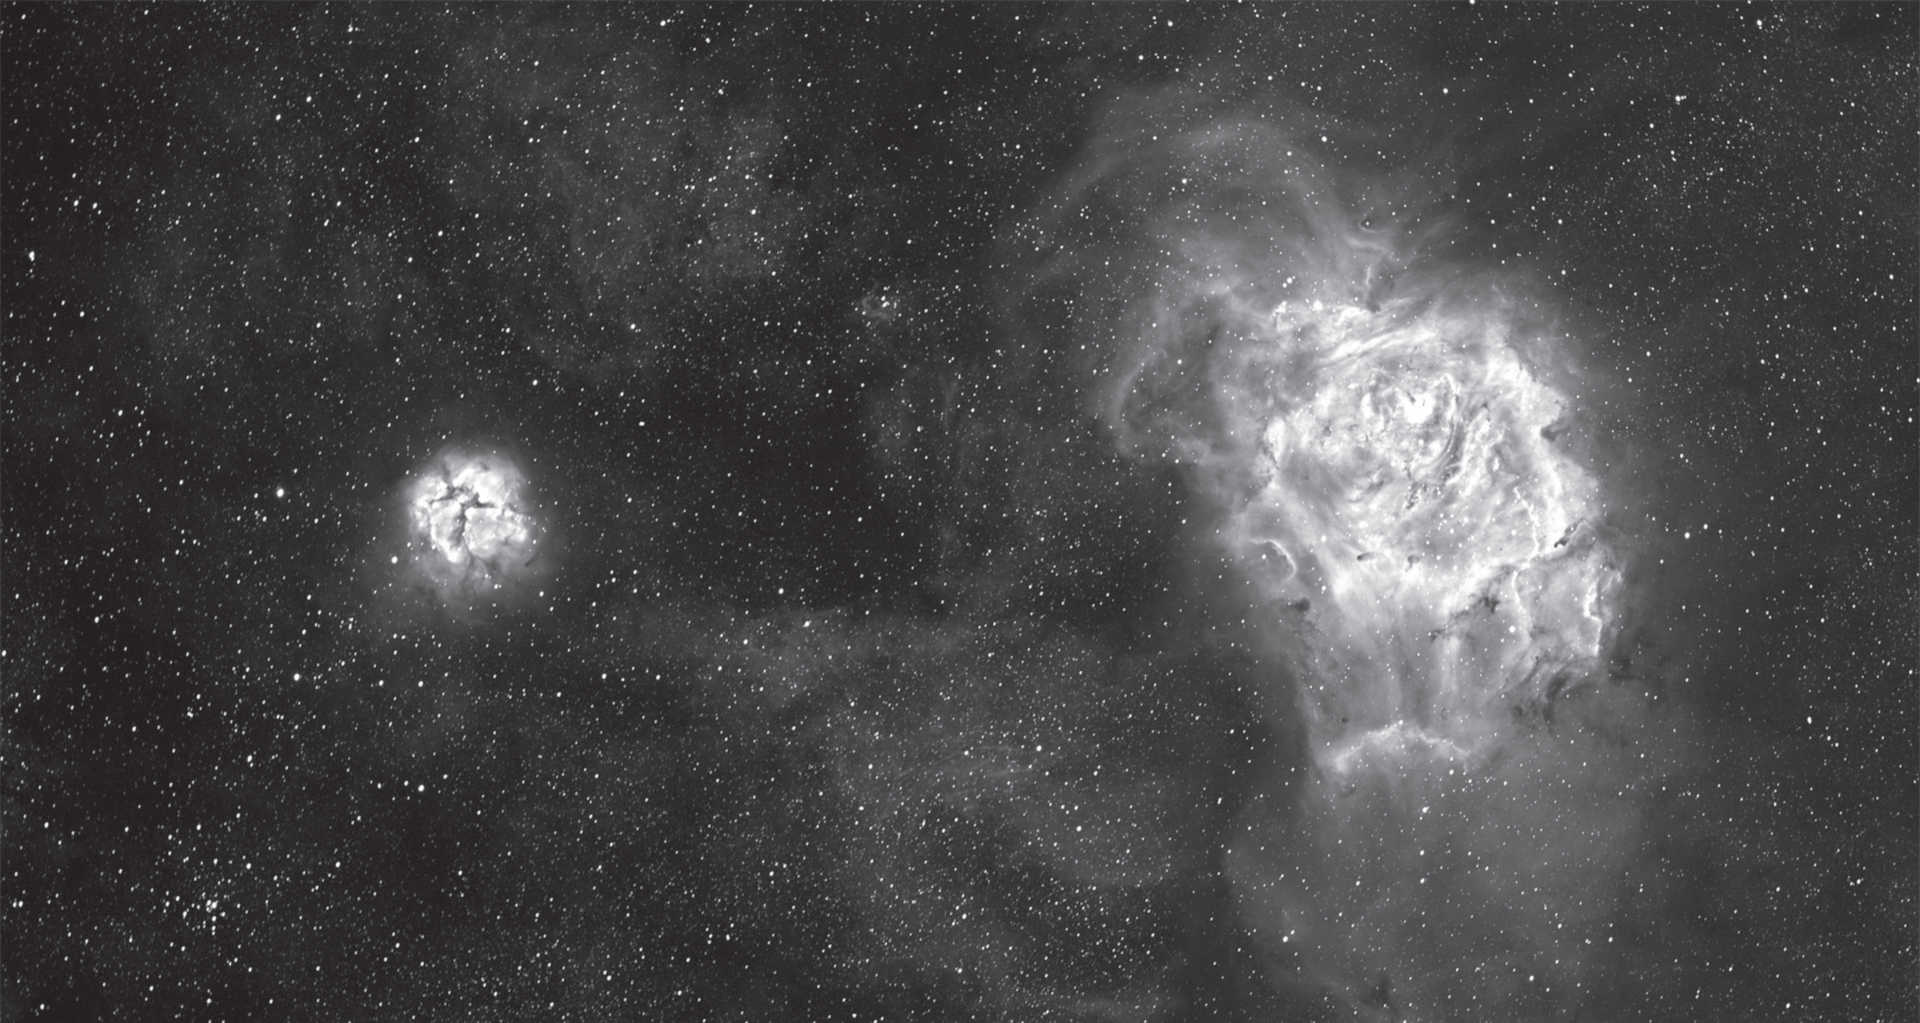 Nebuloasa Laguna și nebuloasa Trifidă (M 8 și M 20) din constelația Săgetătorul. Imaginea însumată a șase expuneri cu un timp de expunere de 1 minut fiecare, șase expuneri cu un timp de expunere de 15 minute fiecare și 2 expuneri cu un timp de expunere de 60 de minute fiecare. Cameră foto: SBIG STF-8300, filtru Hα cu trecere de 35nm, telescop: refractor de 130 mm la o distanță focală de 1000 mm. U. Dittler